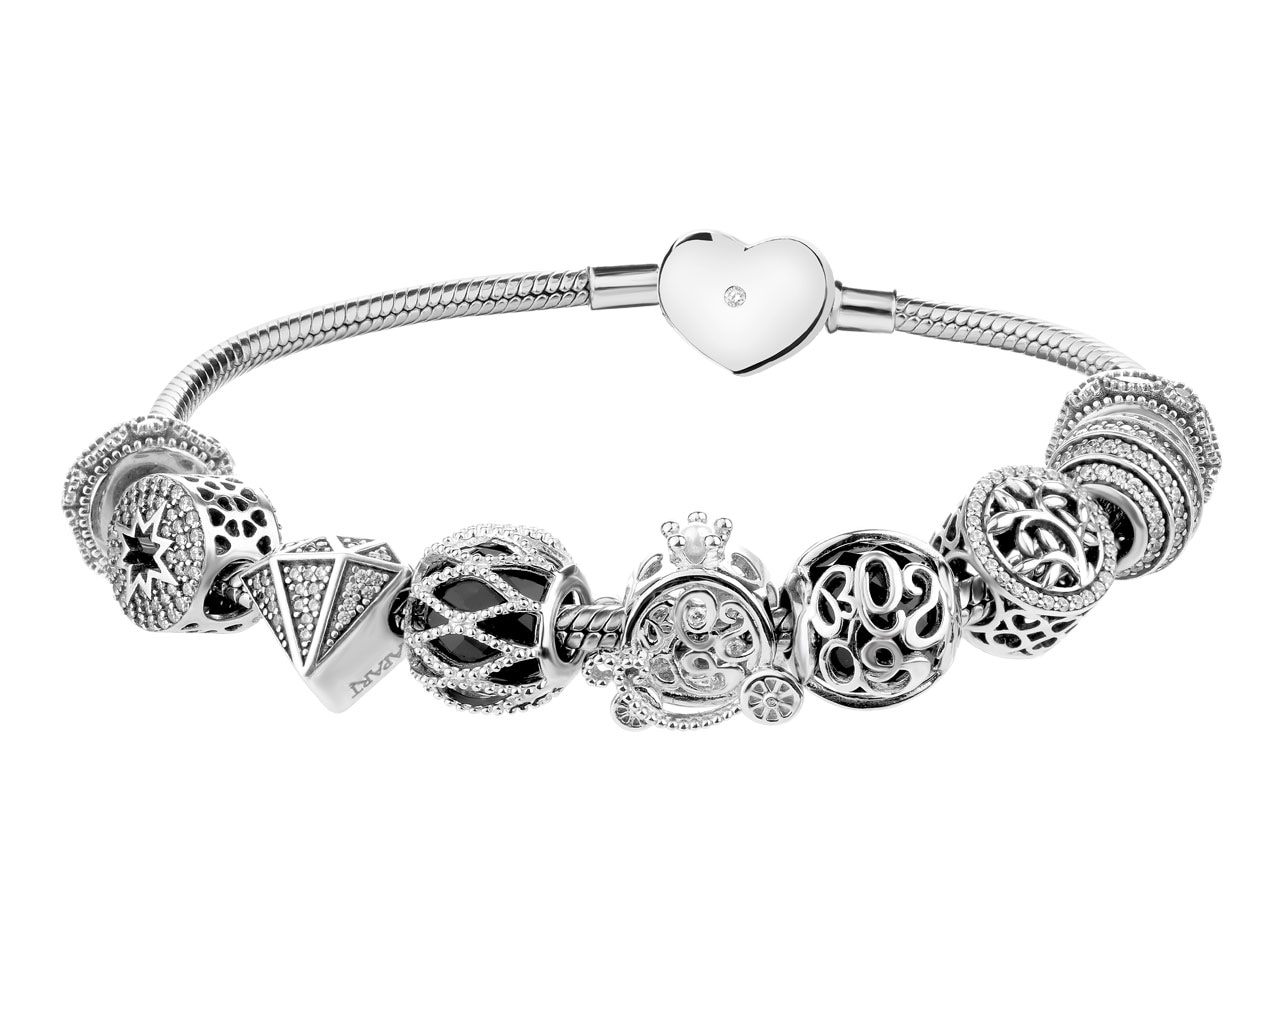 Bransoleta beads zestaw - drzewko, gwiazda, karoca, diament, serce